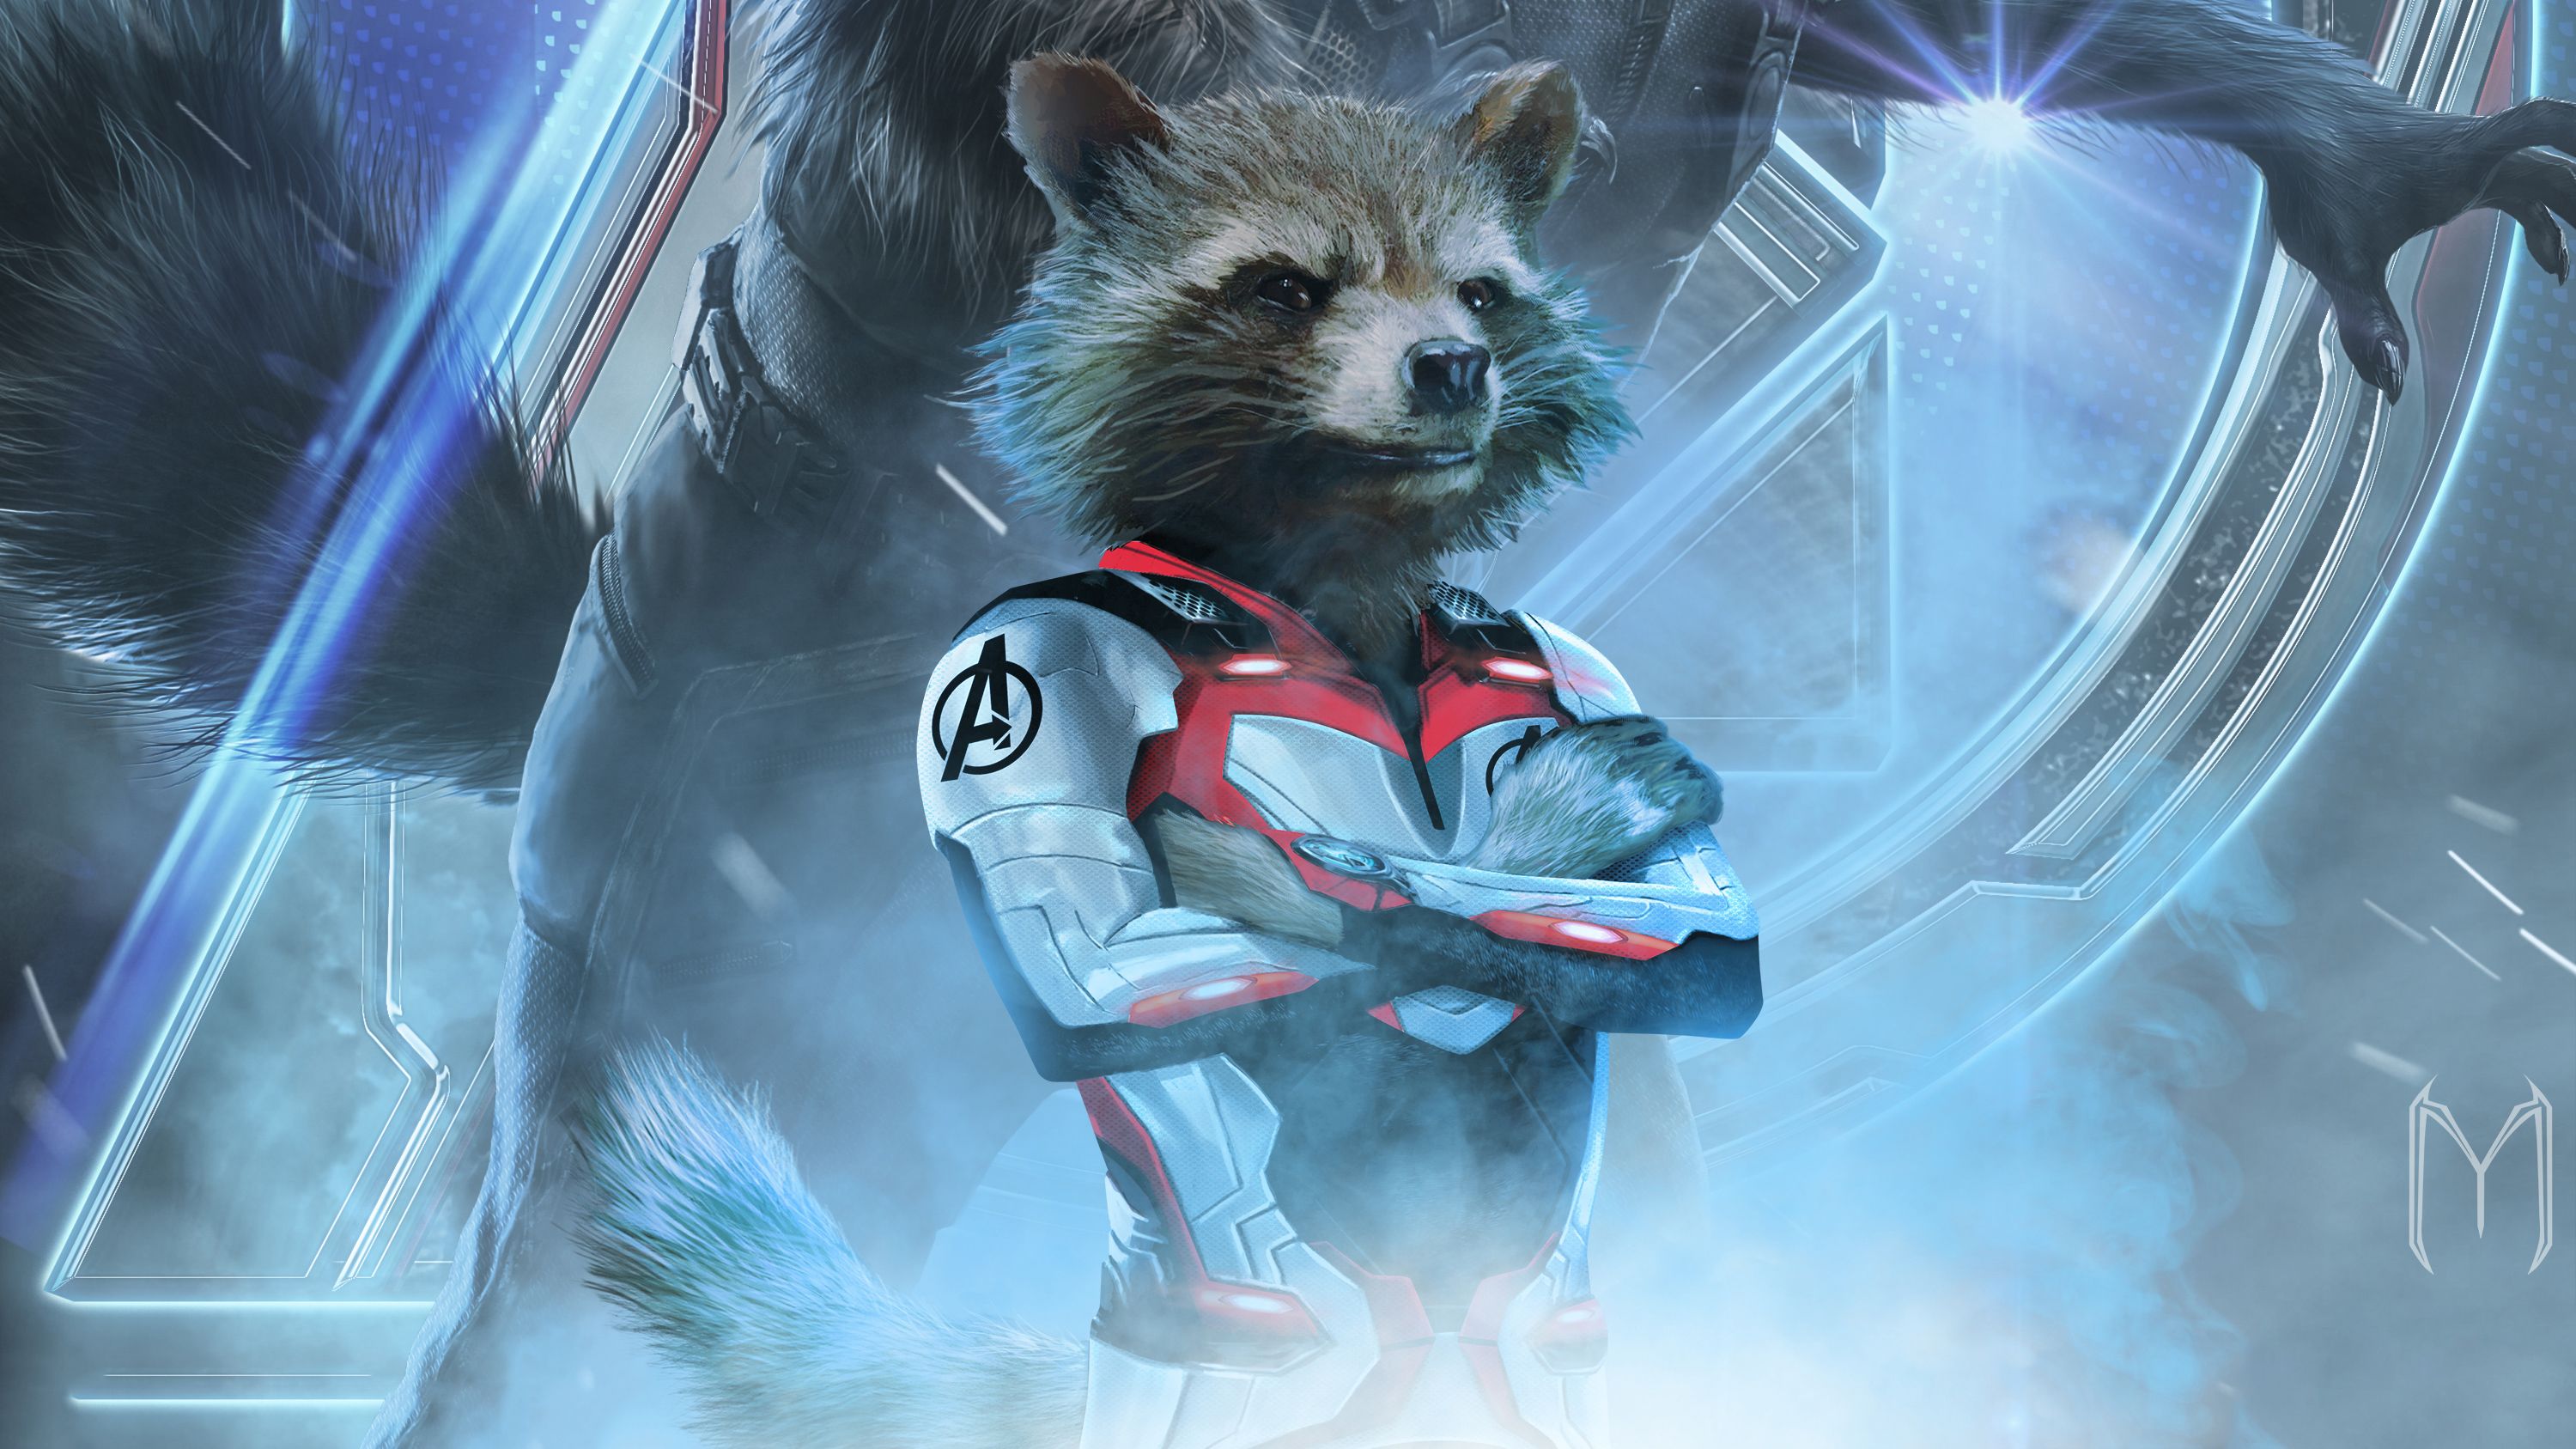 Rocket Raccoon In Avengers Endgame 2019, HD Movies, 4k Wallpapers, Image, B...